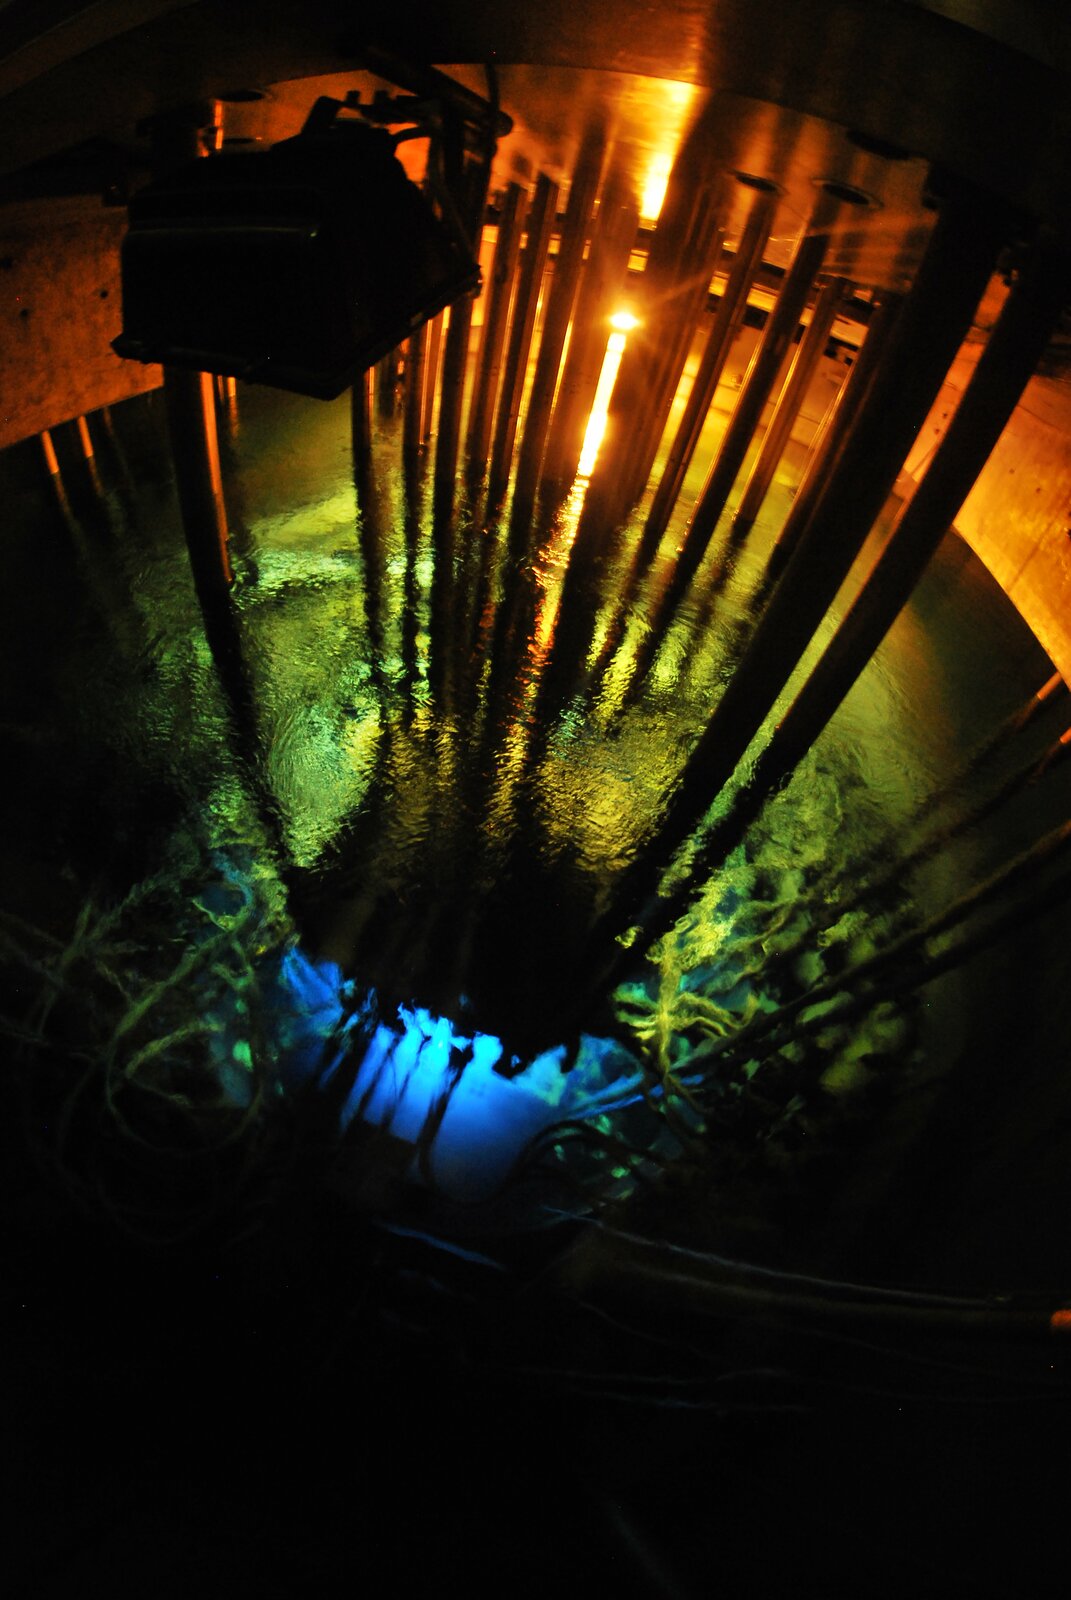 Zdjęcie przedstawia komorę reaktora w czasie jego pracy. System reaktora zanurzony jest w wodzie, spod powierzchni wydobywa się niebieskozielone światło, a znad powierzchni pomarańczowe. 